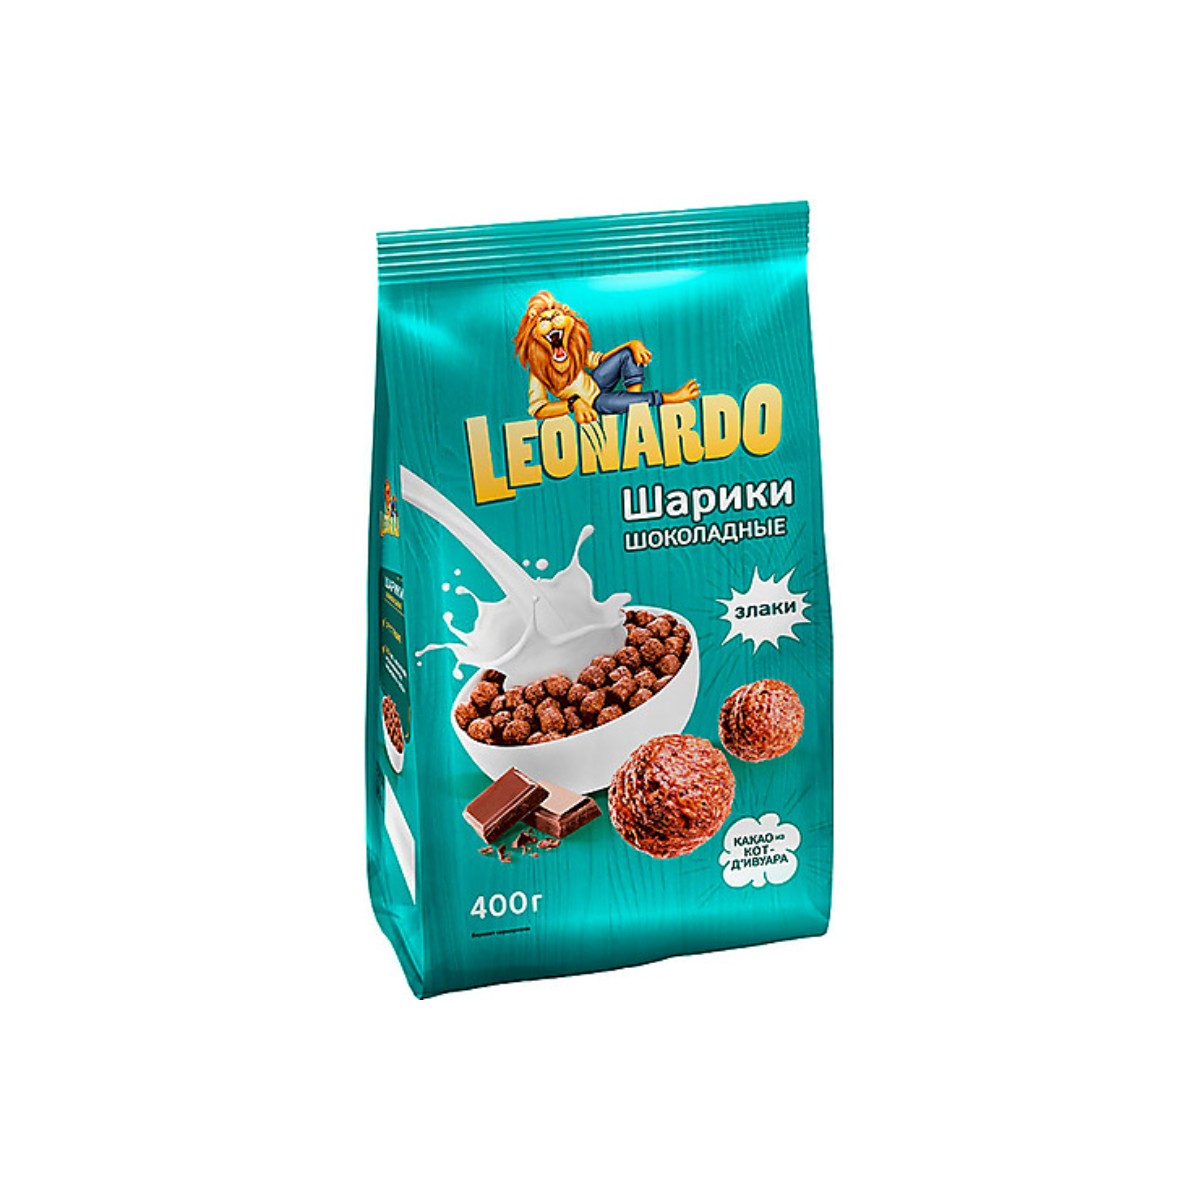 Шарики Leonardo готовый завтрак Шоколадные, 2 шт по 400 г